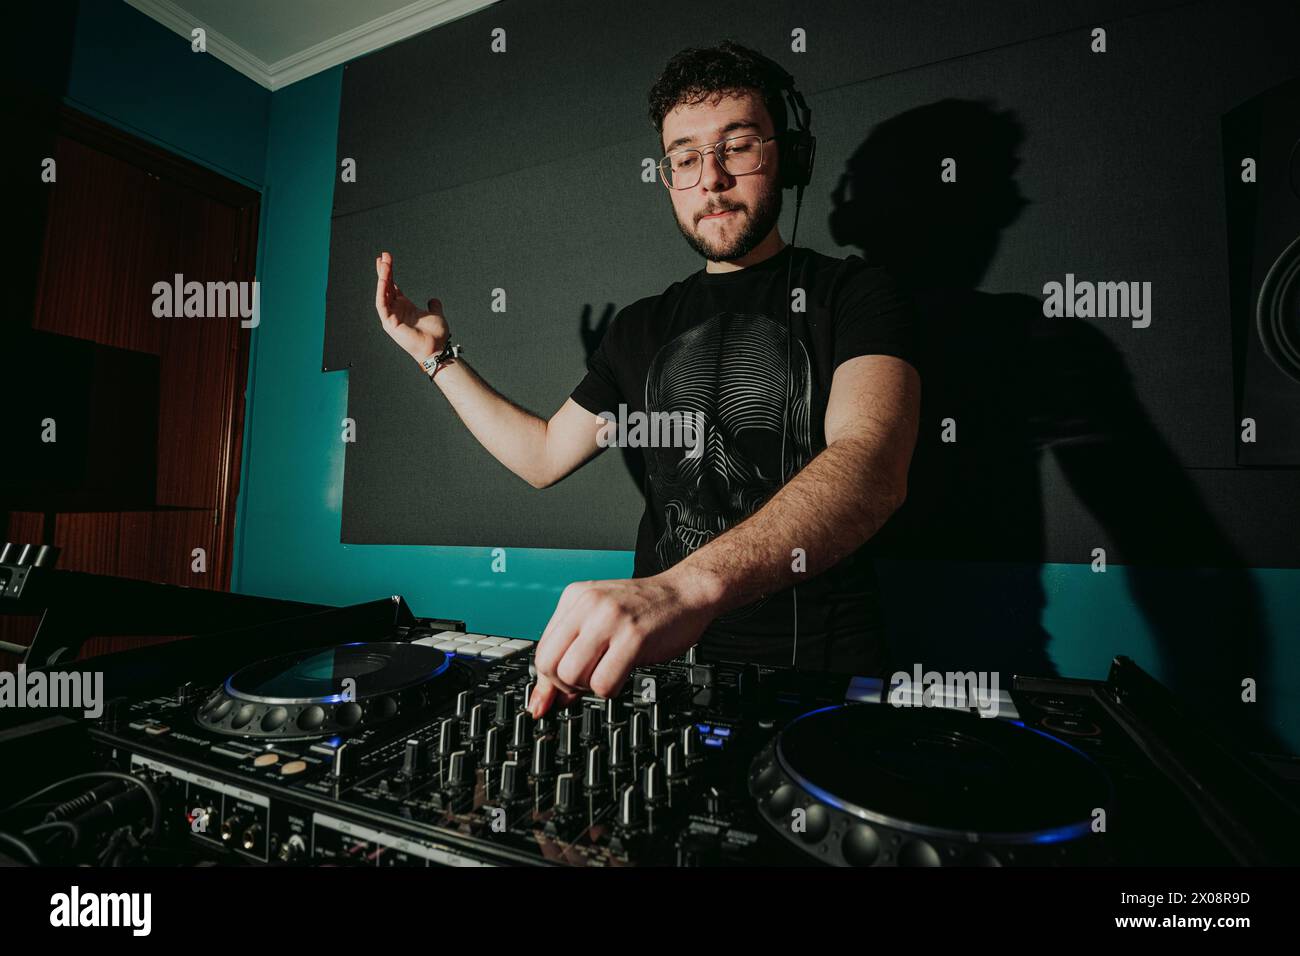 Ein männlicher DJ mischt Songs auf einem professionellen Audiomischer in einem dunklen Studiozimmer mit blauer Stimmungsbeleuchtung Stockfoto